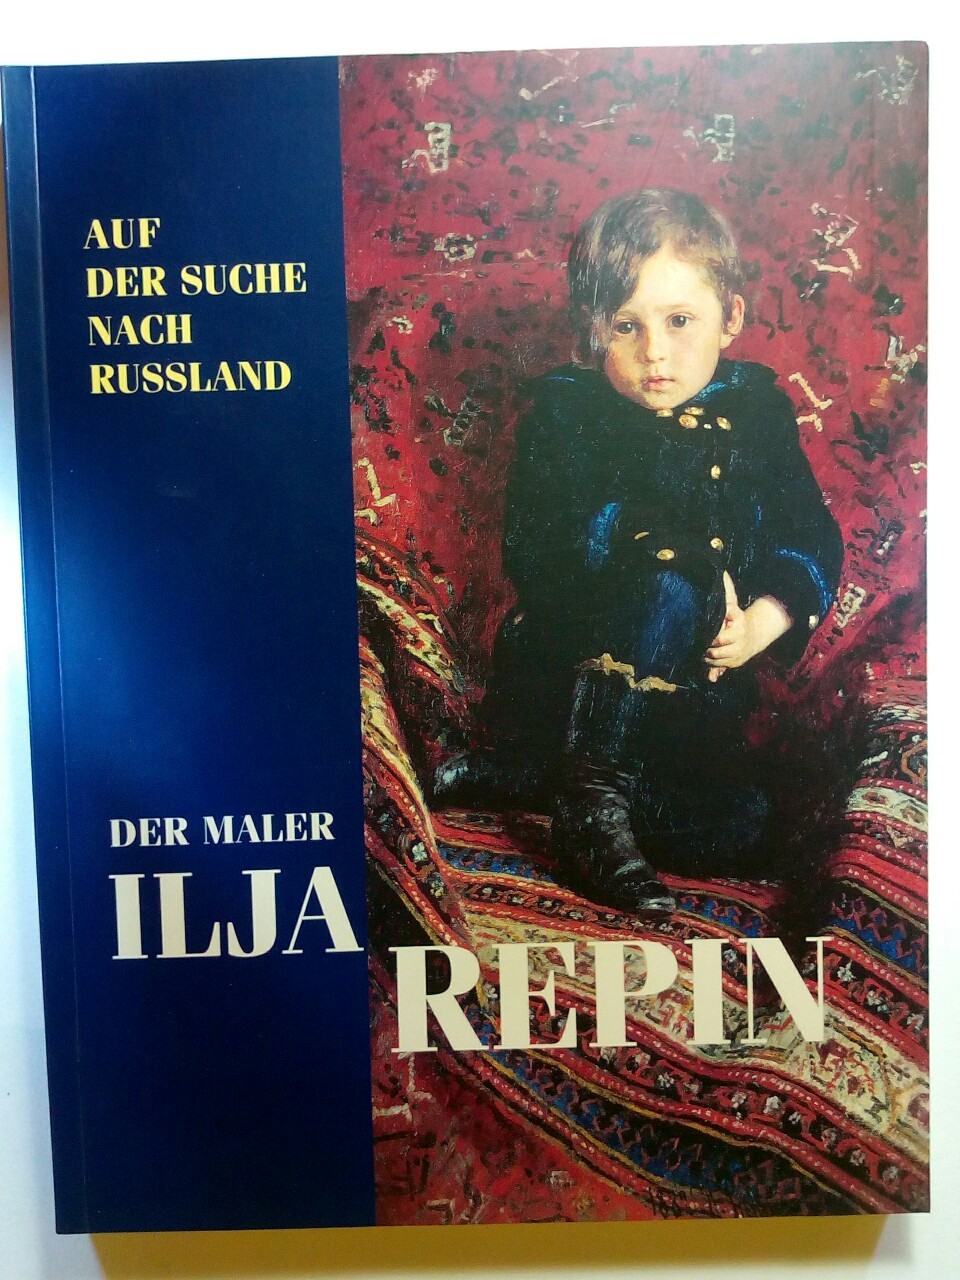 Der Maler Ilja Repin: Auf der Suche nach Russland